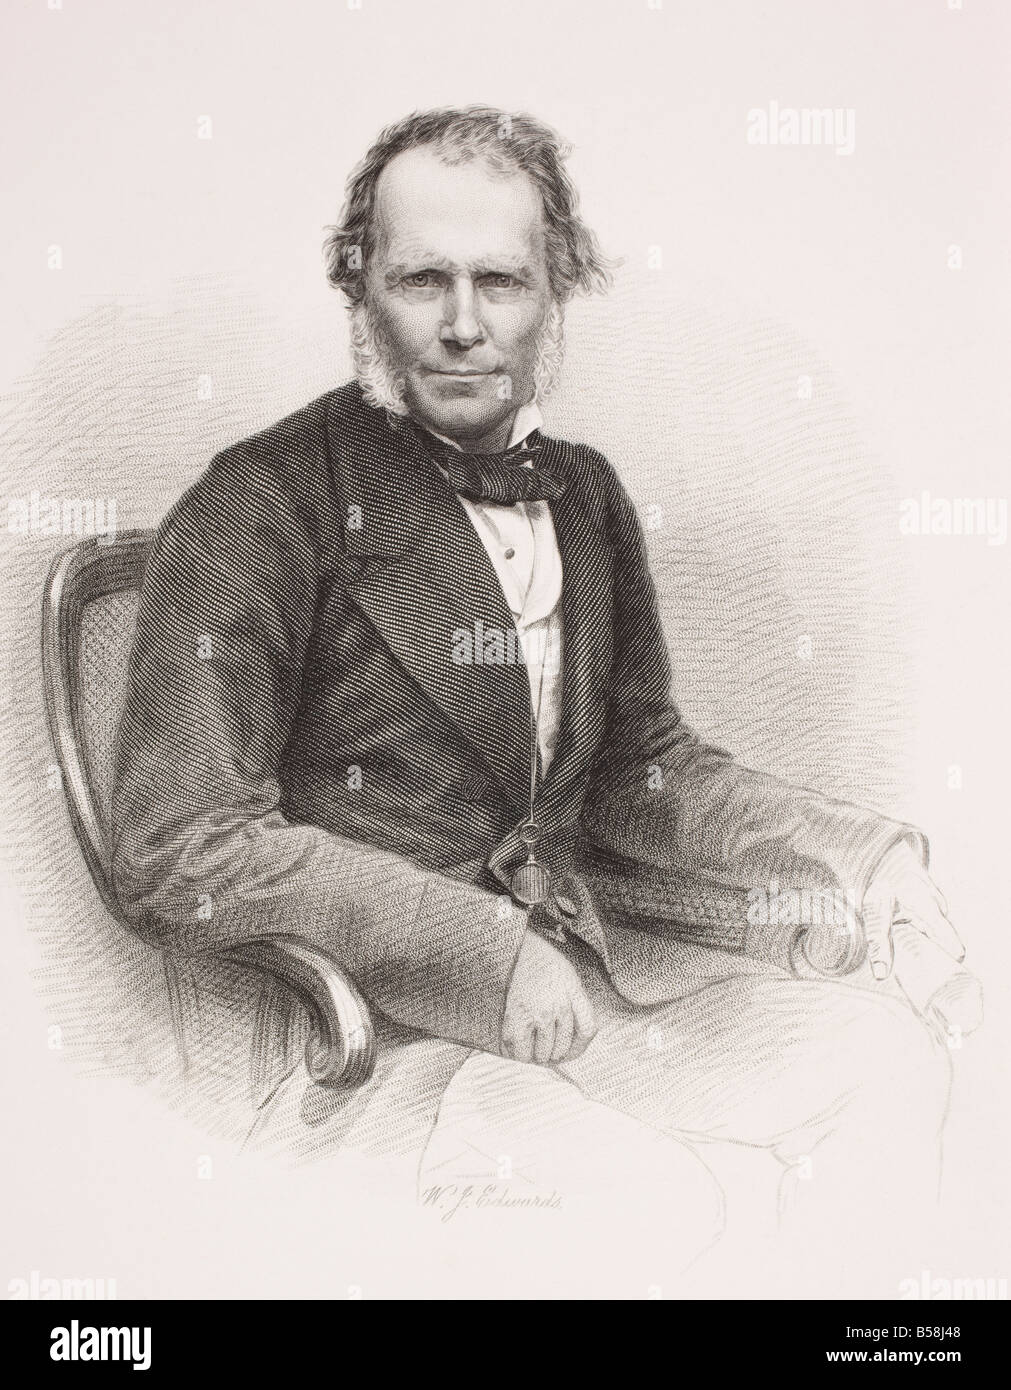 Sir James Brooke, 1803-1868. Erster weißer Rajah von Sarawak. Aus dem Buch Galerie historischer Porträts, erschienen um 1880. Stockfoto